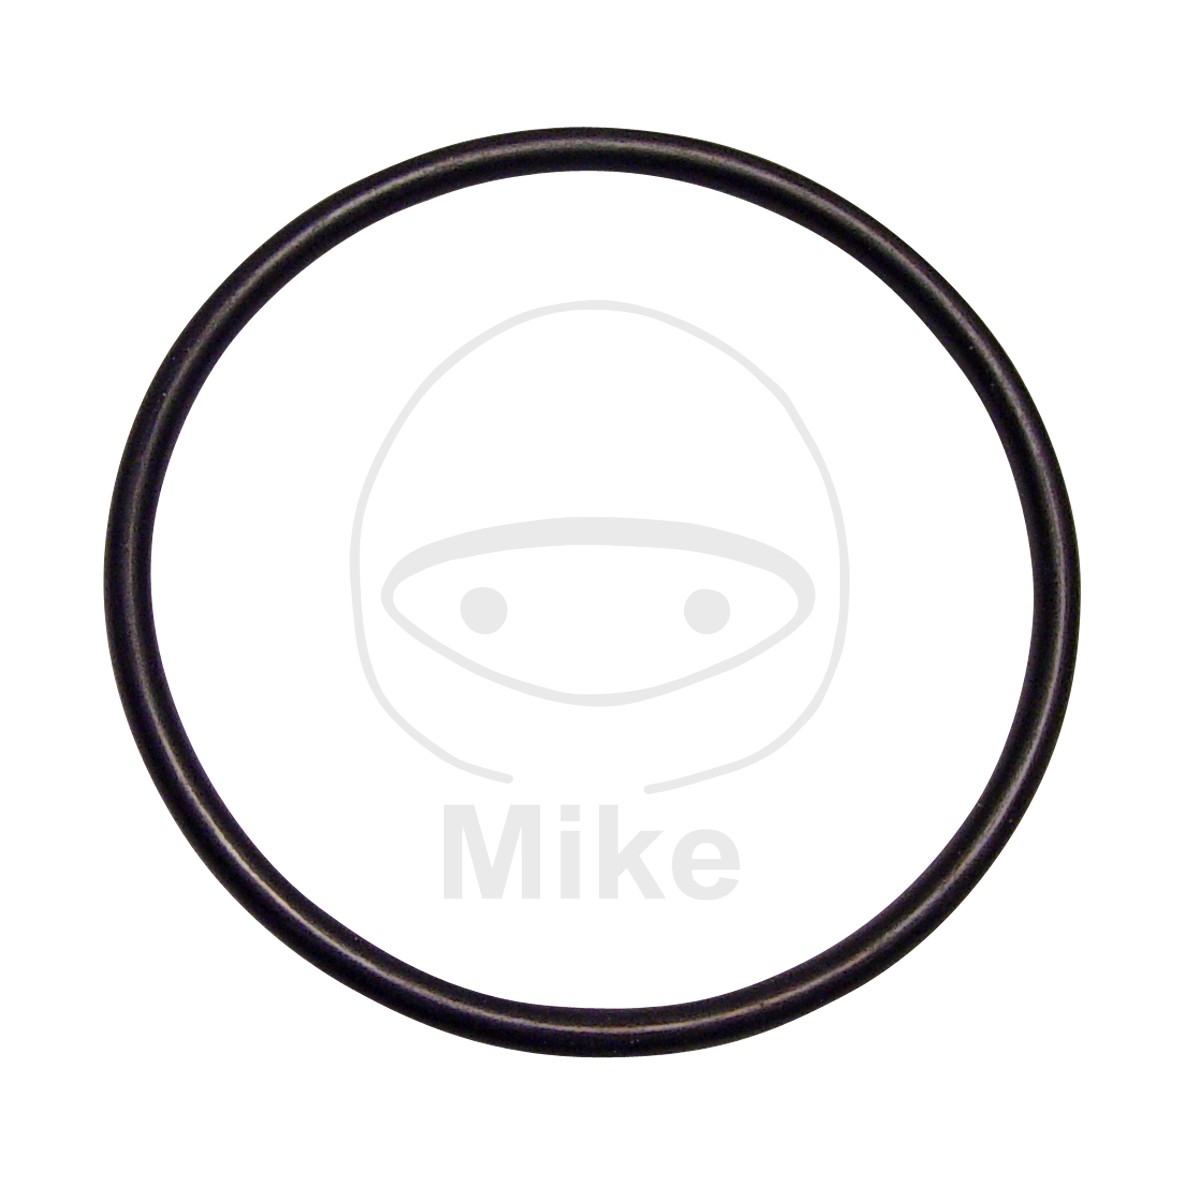 Obrázek produktu Těsnění ventilového víka ATHENA M752404160004 O-kroužek 2.4X41.61 mm